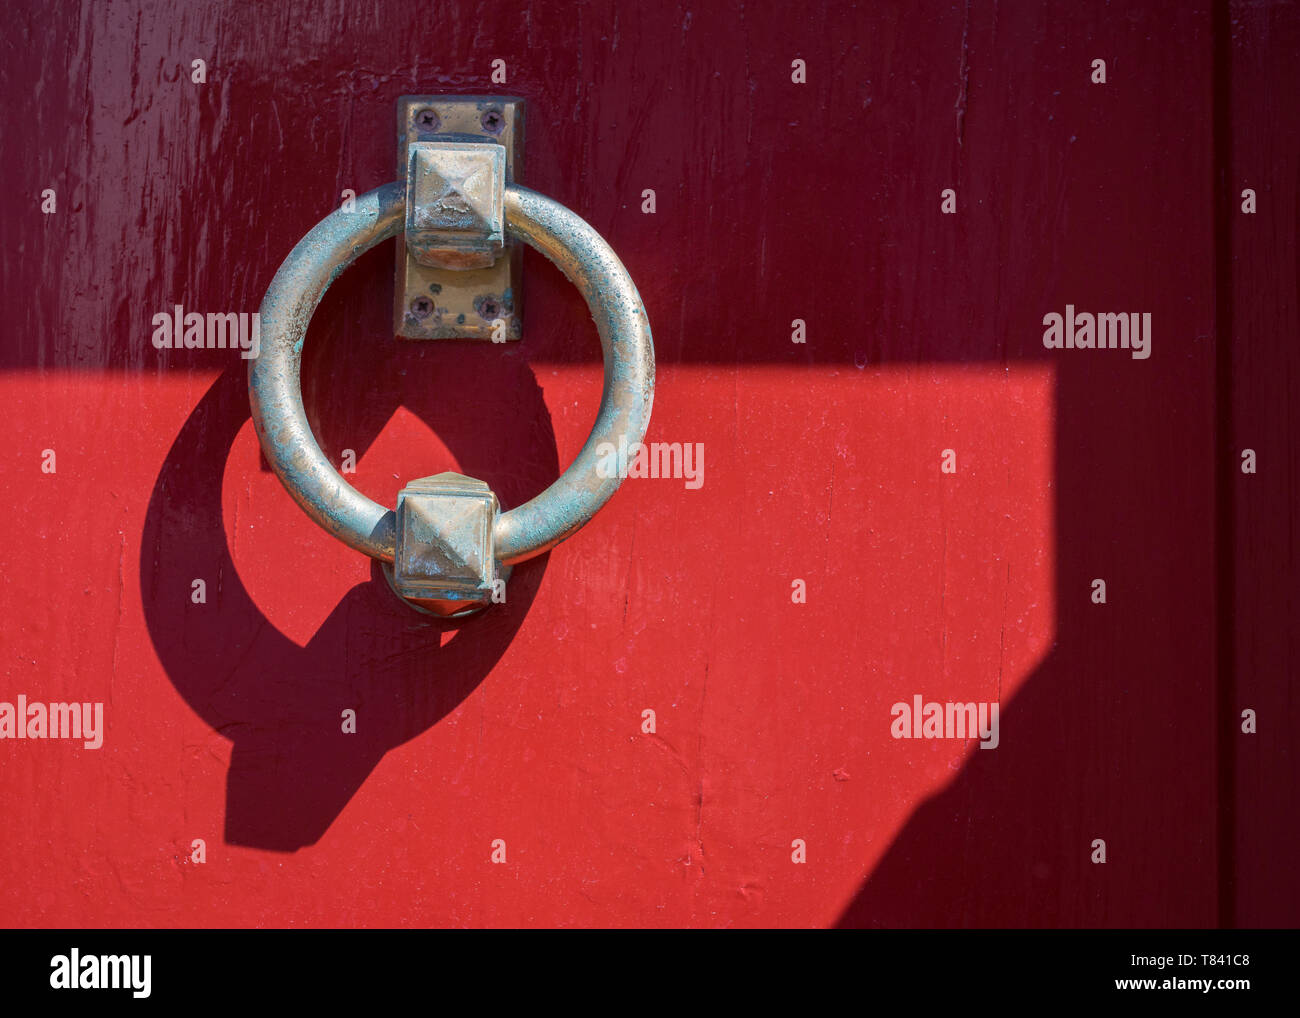 A circular metal door knocker on a bright red wooden door, Stavanger, Norway. Stock Photo